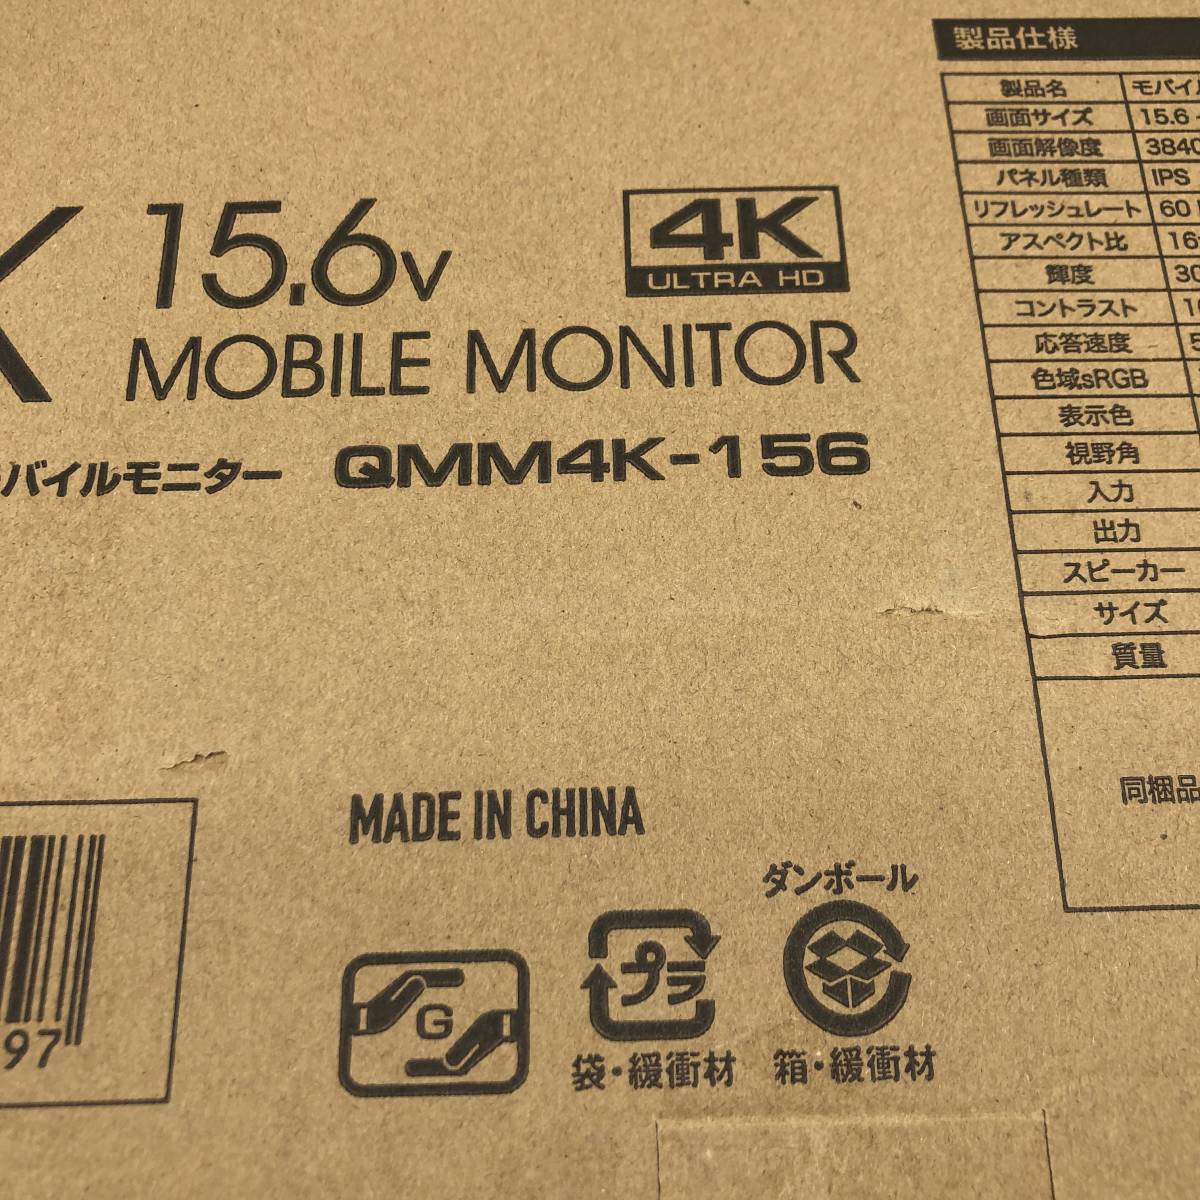 【説明書不足】山善 YAMAZEN Qriom AM-805 15.6インチ 4K モバイルディスプレイ Type-C/HDMI-mini ブルーライト機能 IPSパネル QMM4K-156